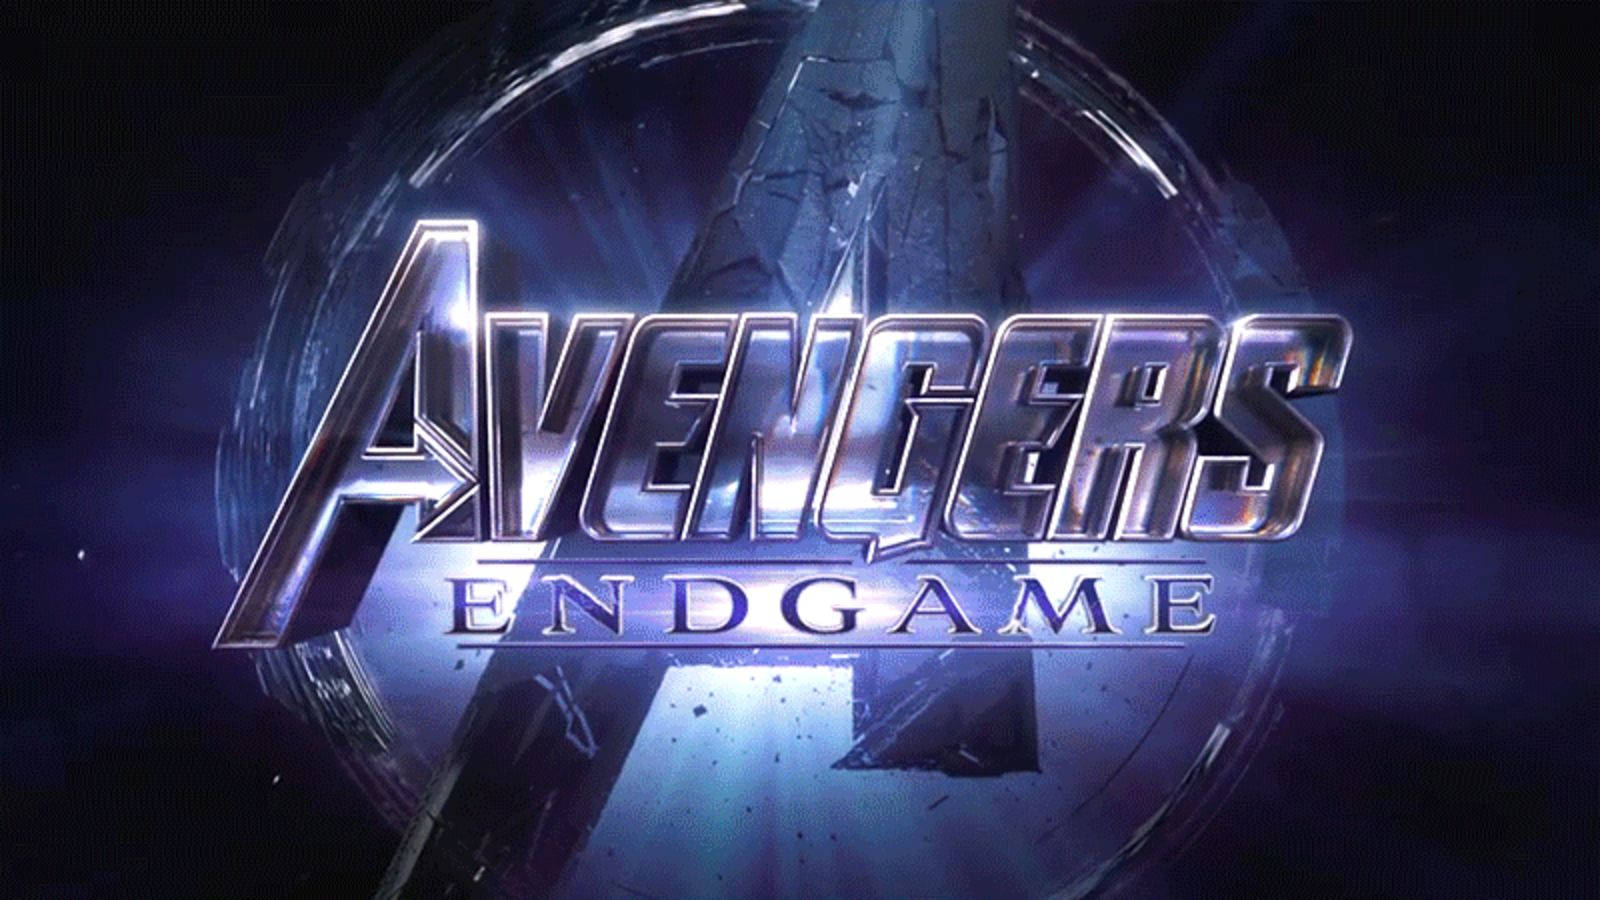 The Avengers Unite in Avengers Endgame Wallpaper